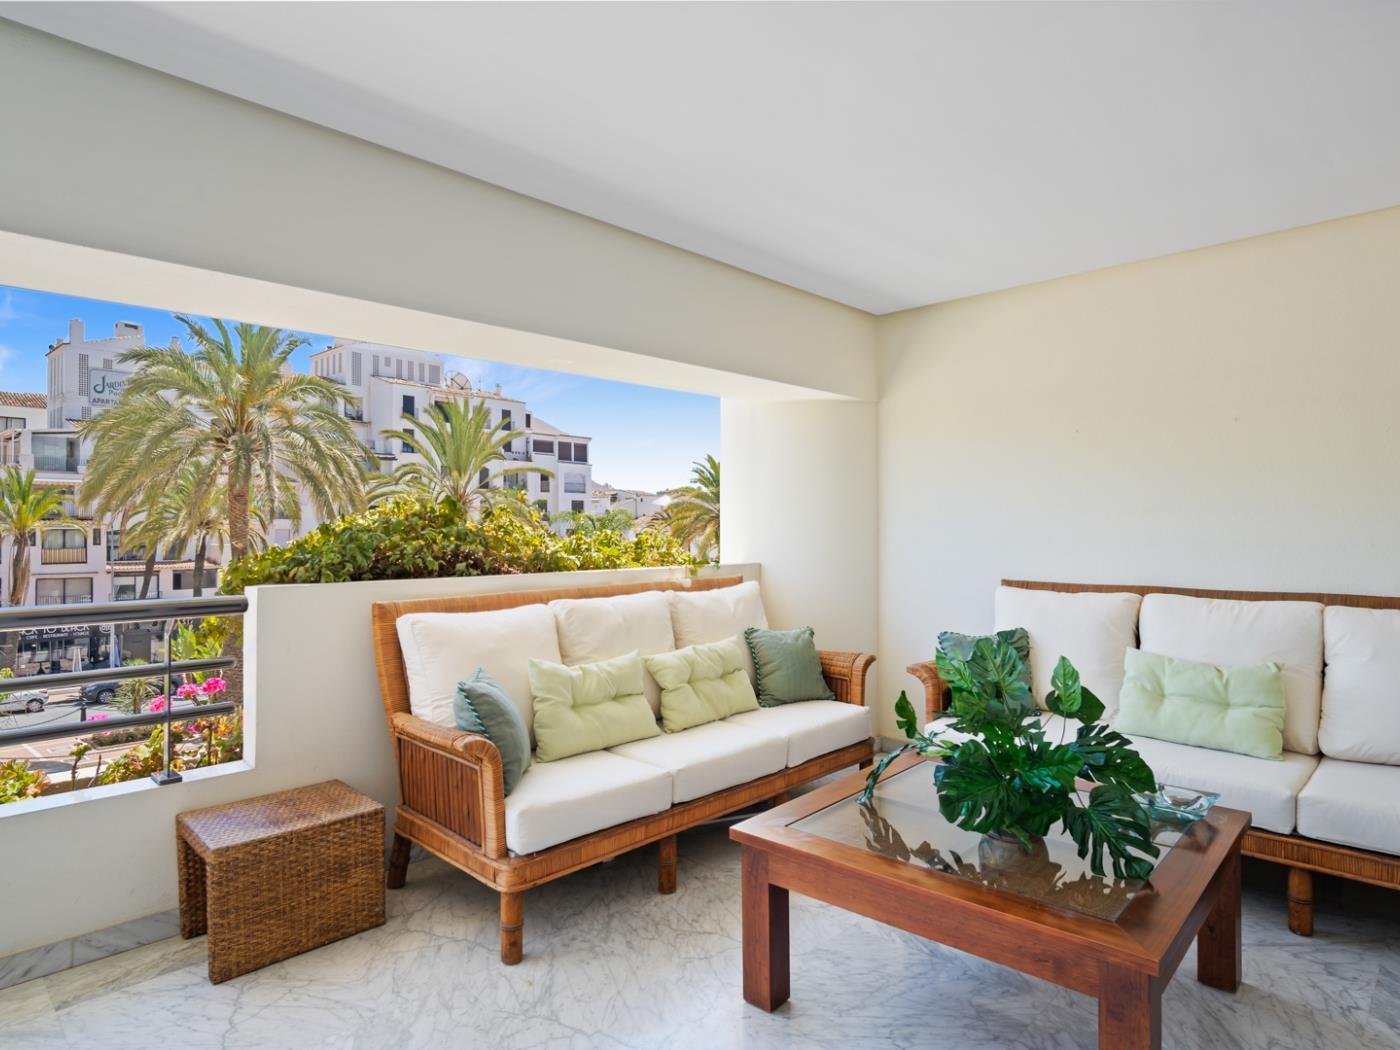 Appartement de 3 chambres à coucher près de la plage situé à Playas del Duque